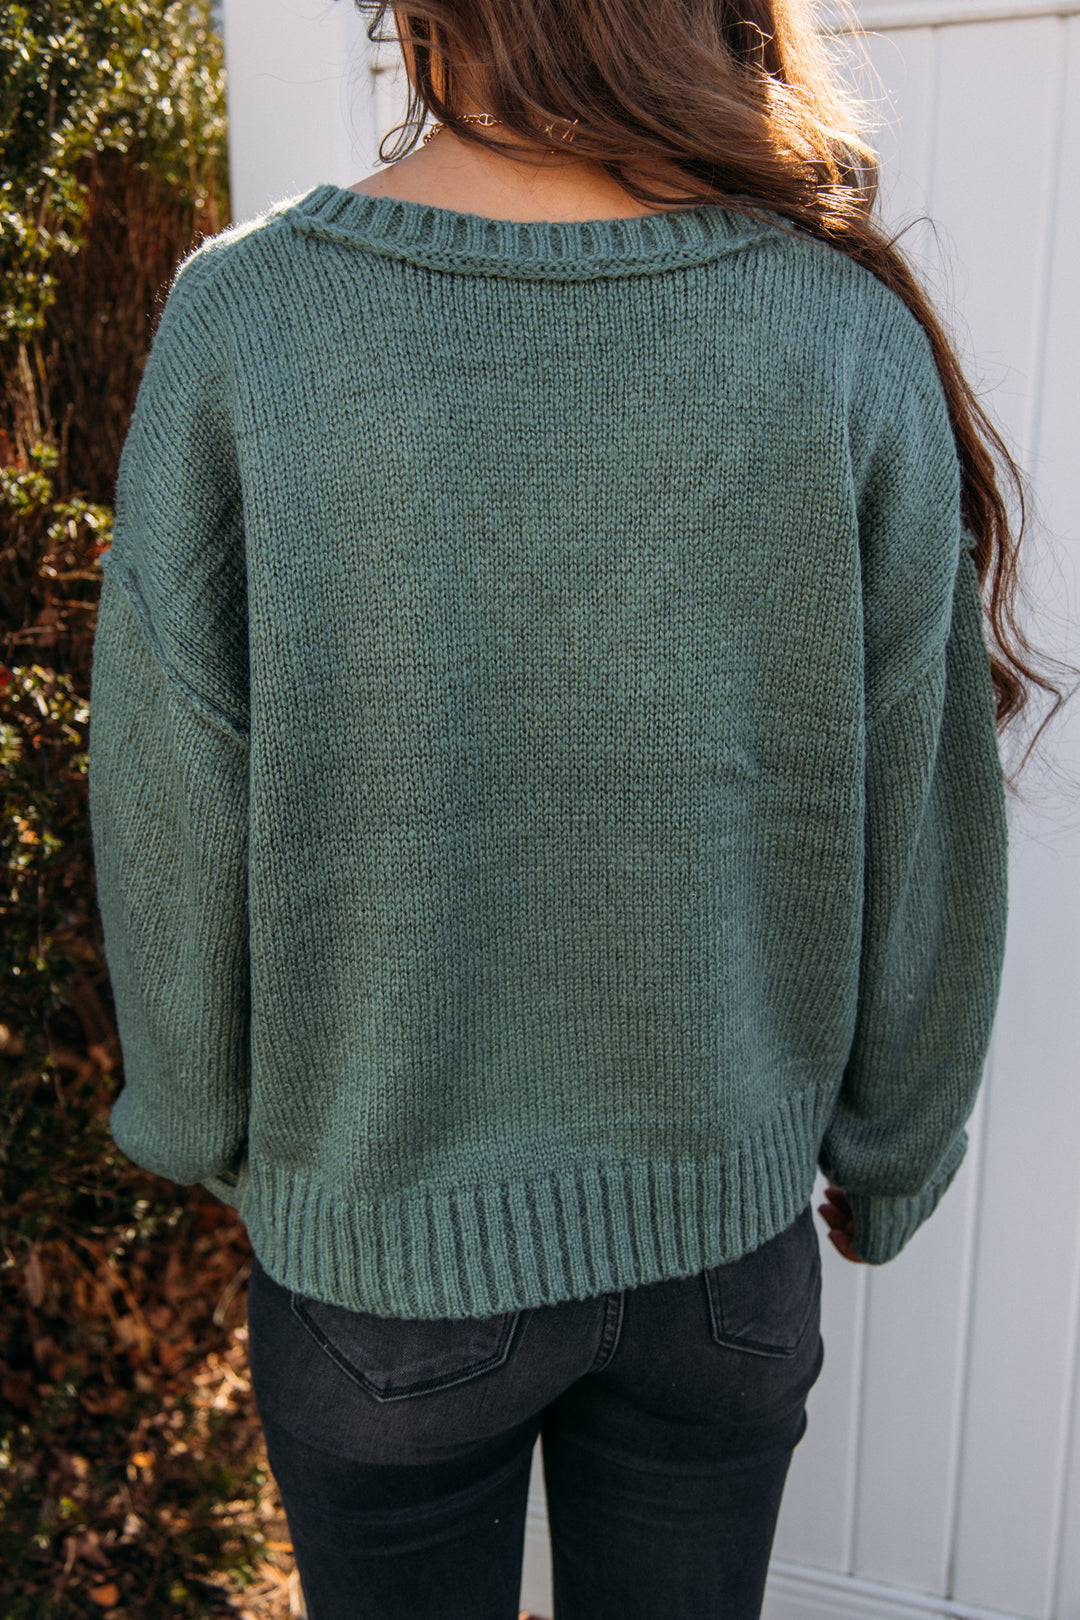 Fierce Sweater - Gray Green